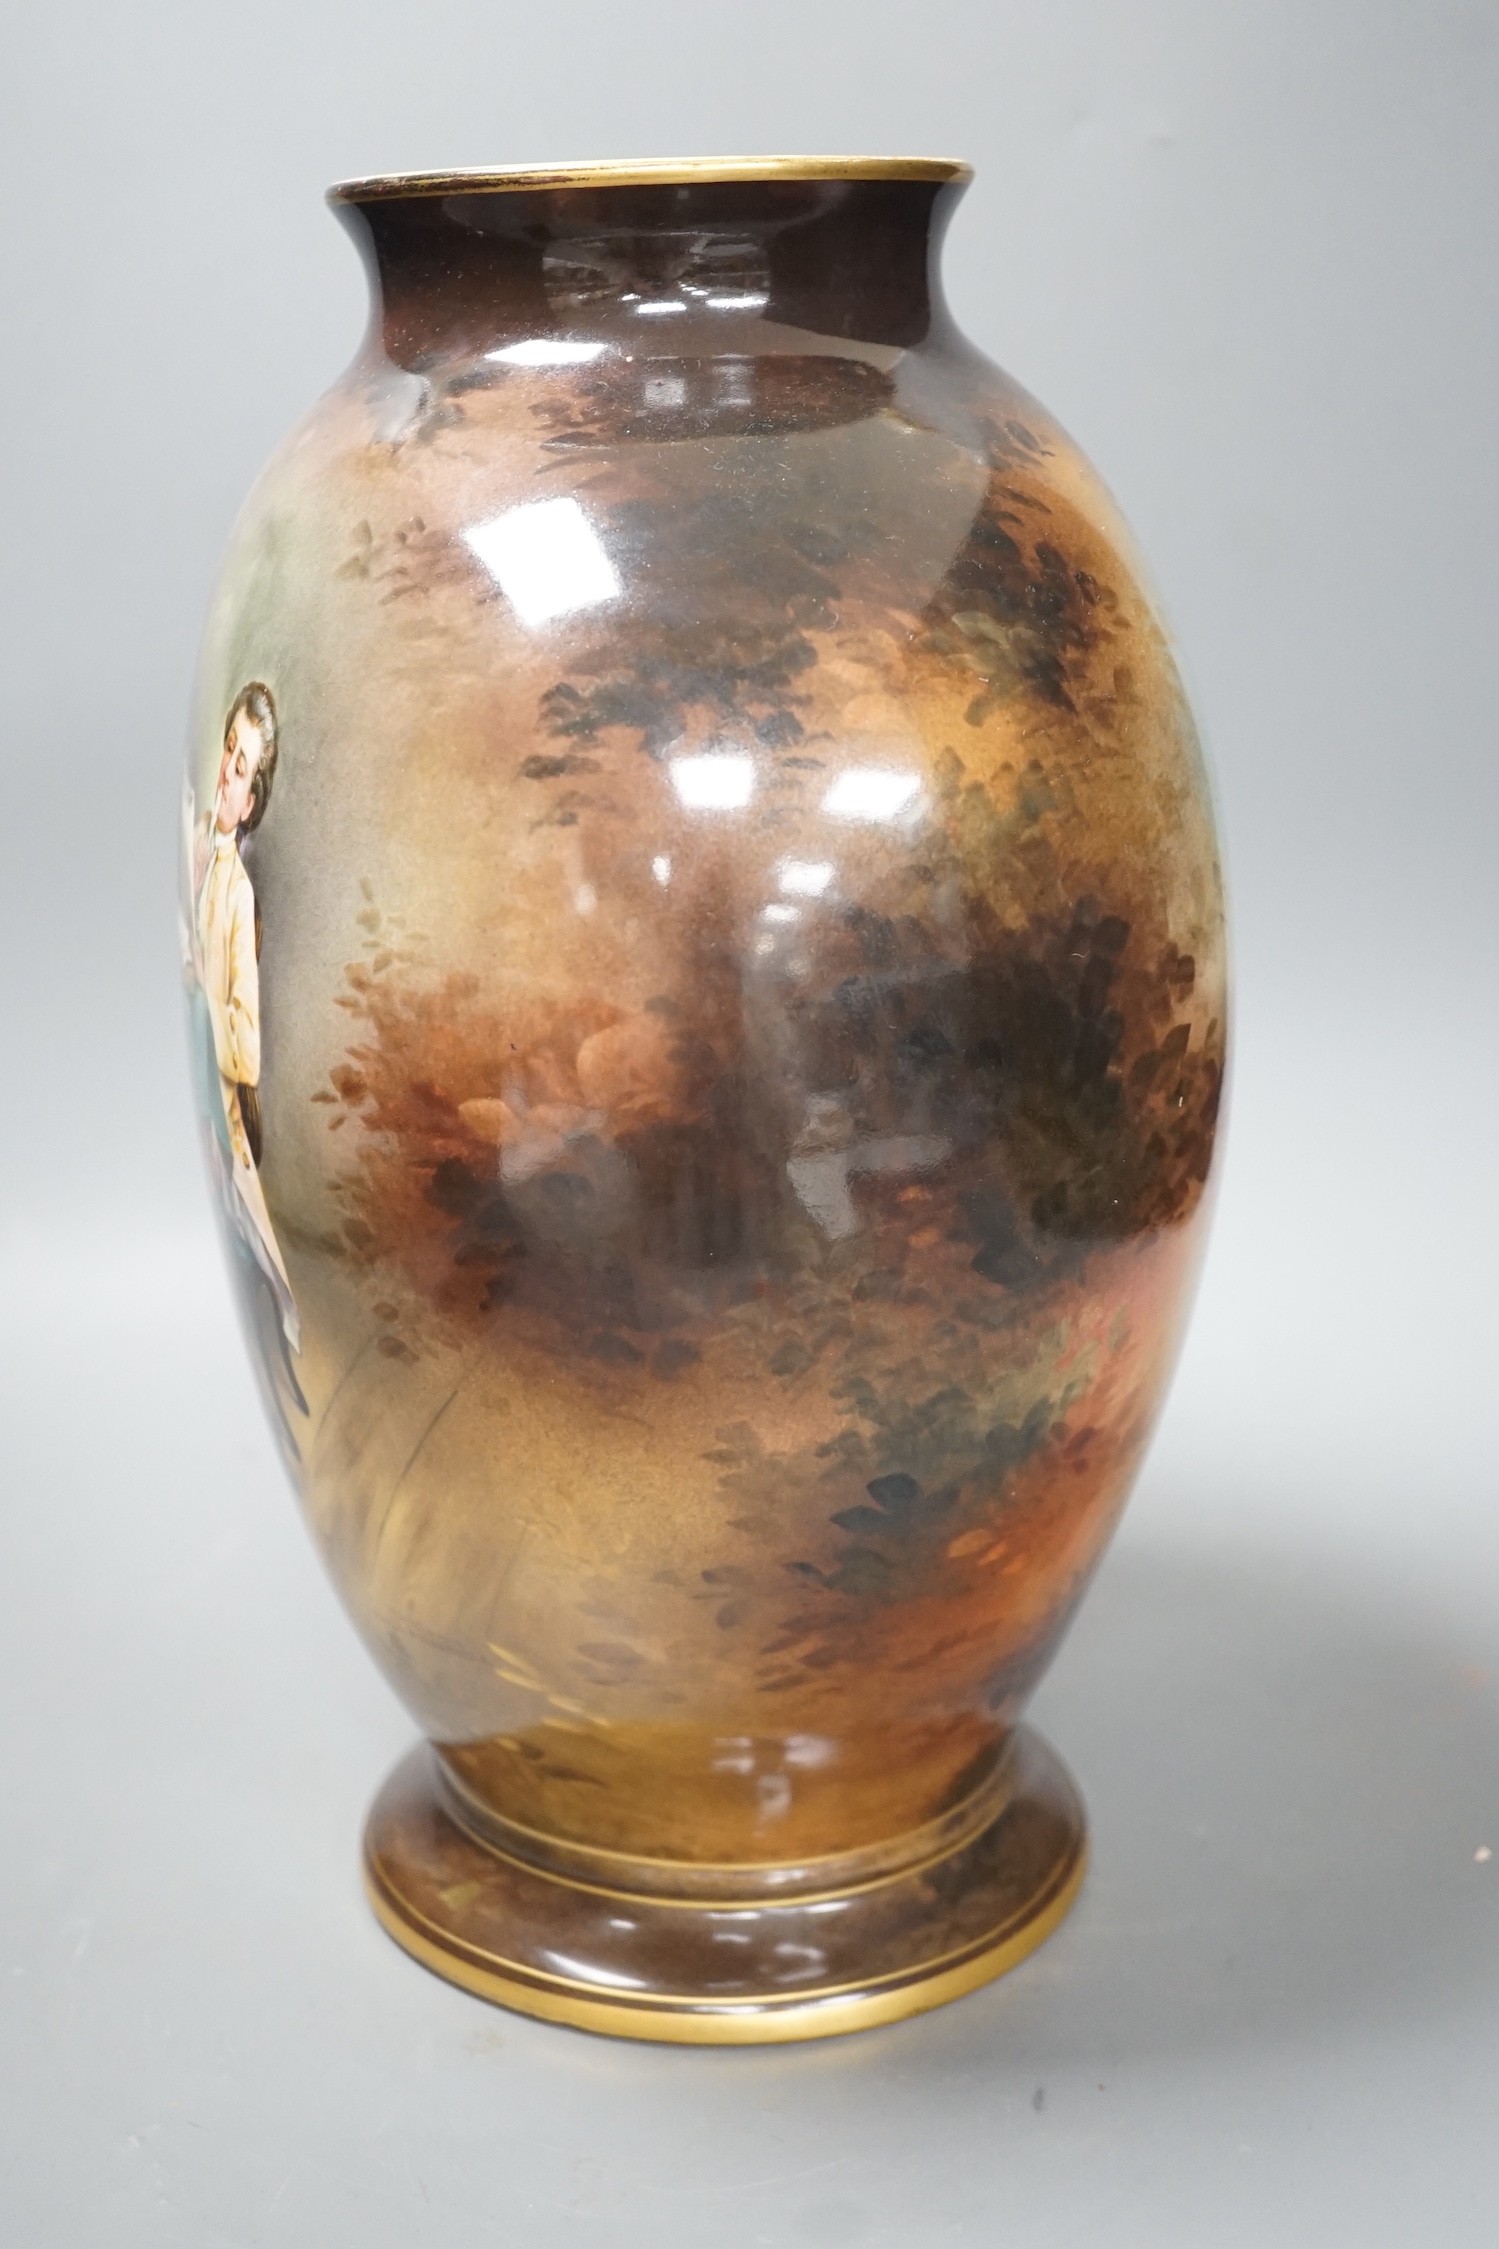 A German porcelain vase signed A. Winkner Nach Meissonier, 34cm